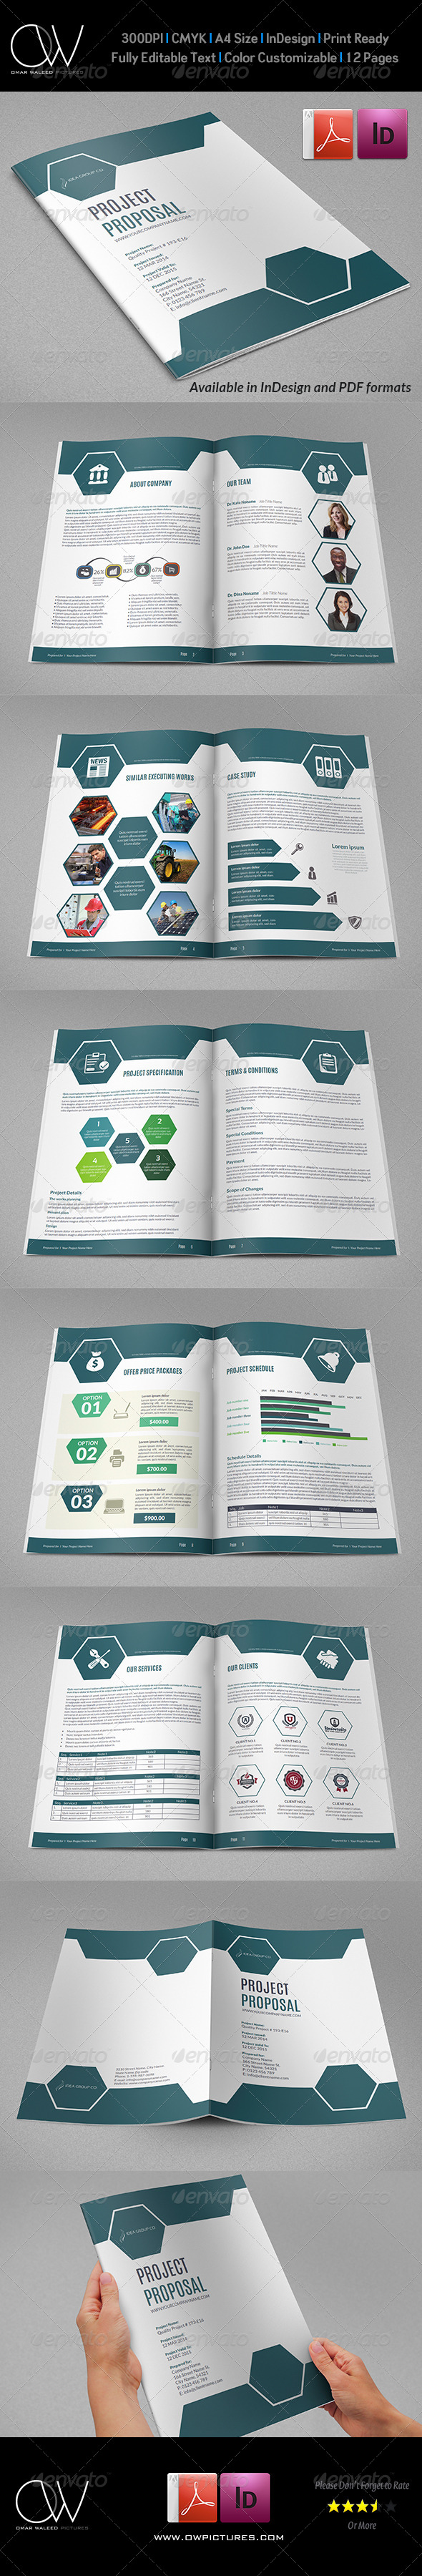 GraphicRiver Company Proposal Brochure Template Vol.3 7667951